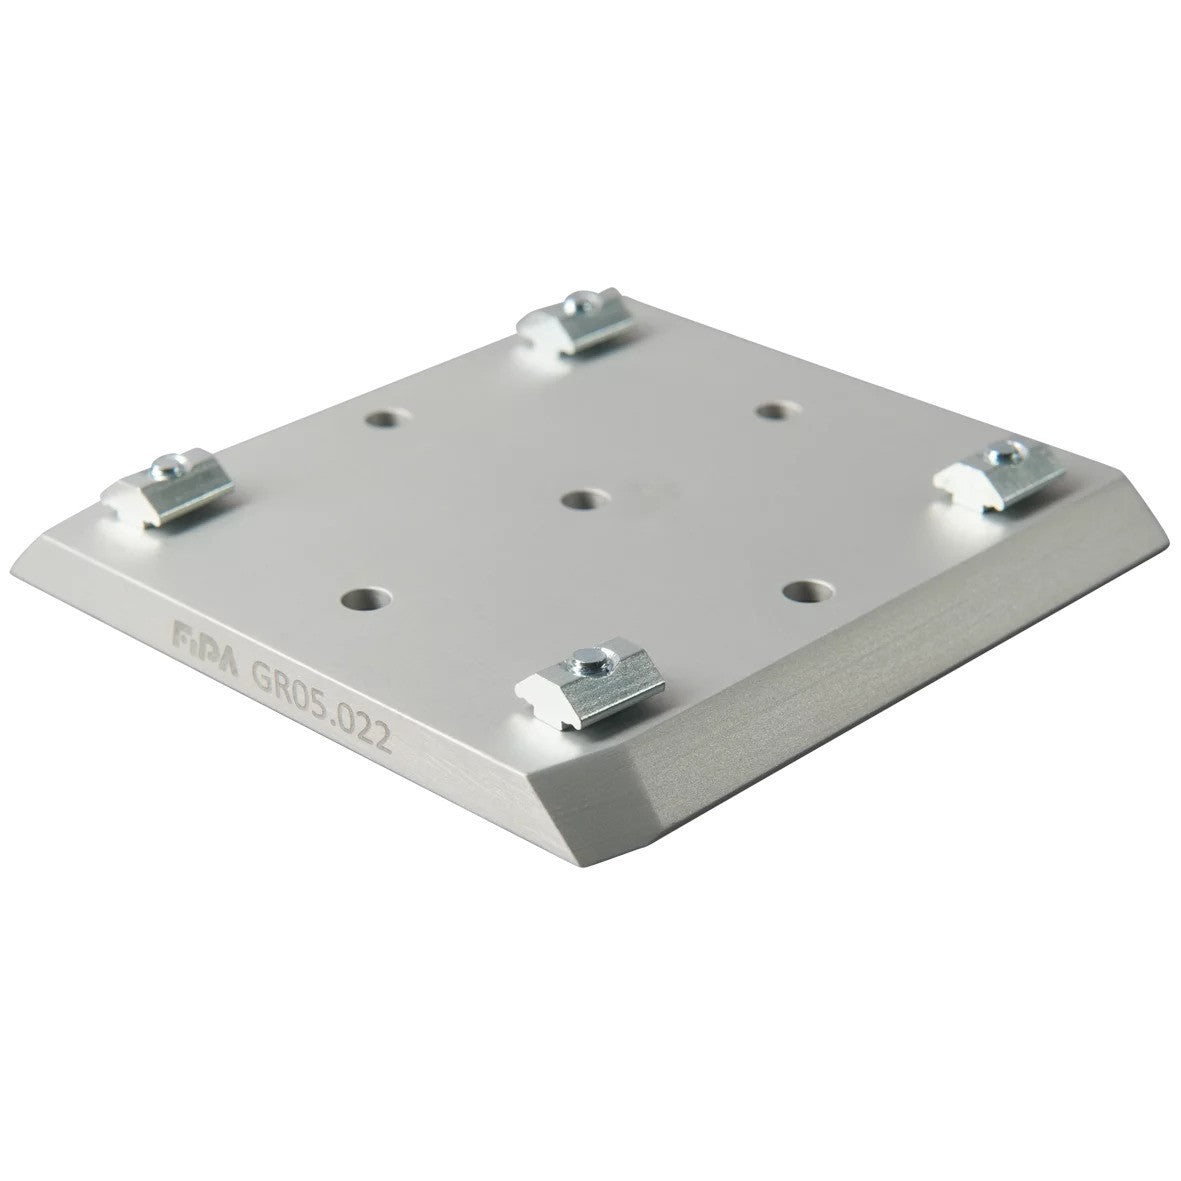 GR05.022 Gripper base plate S/M 100x100